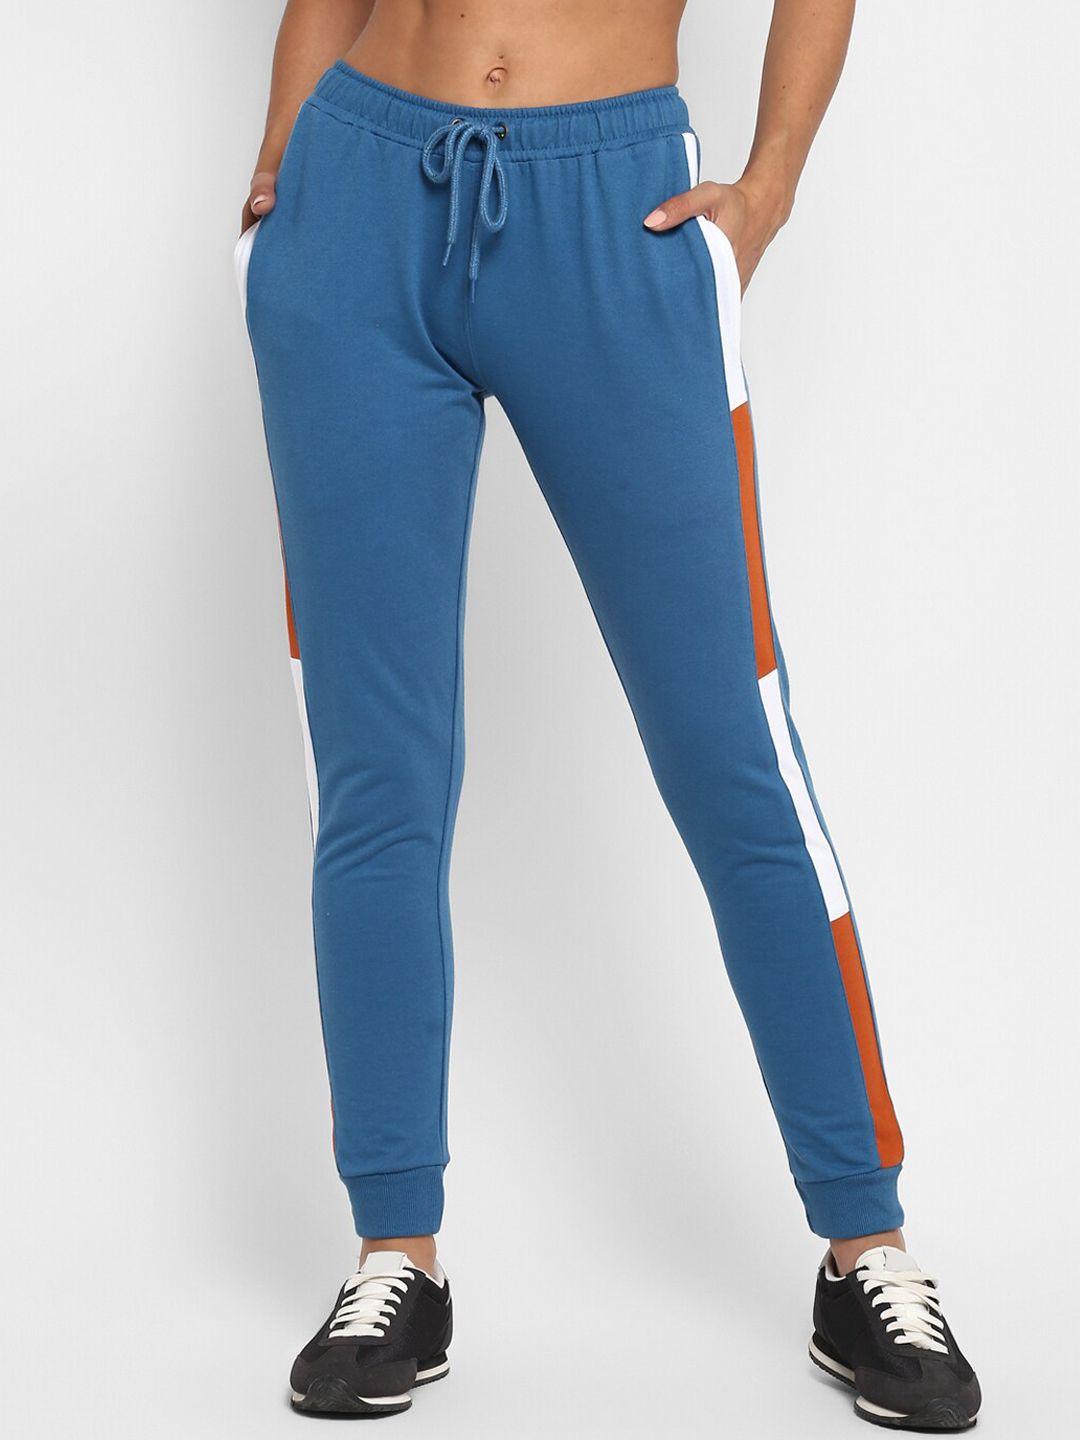 alan jones women teal-blue & white colourblocked slim-fit joggers track pant